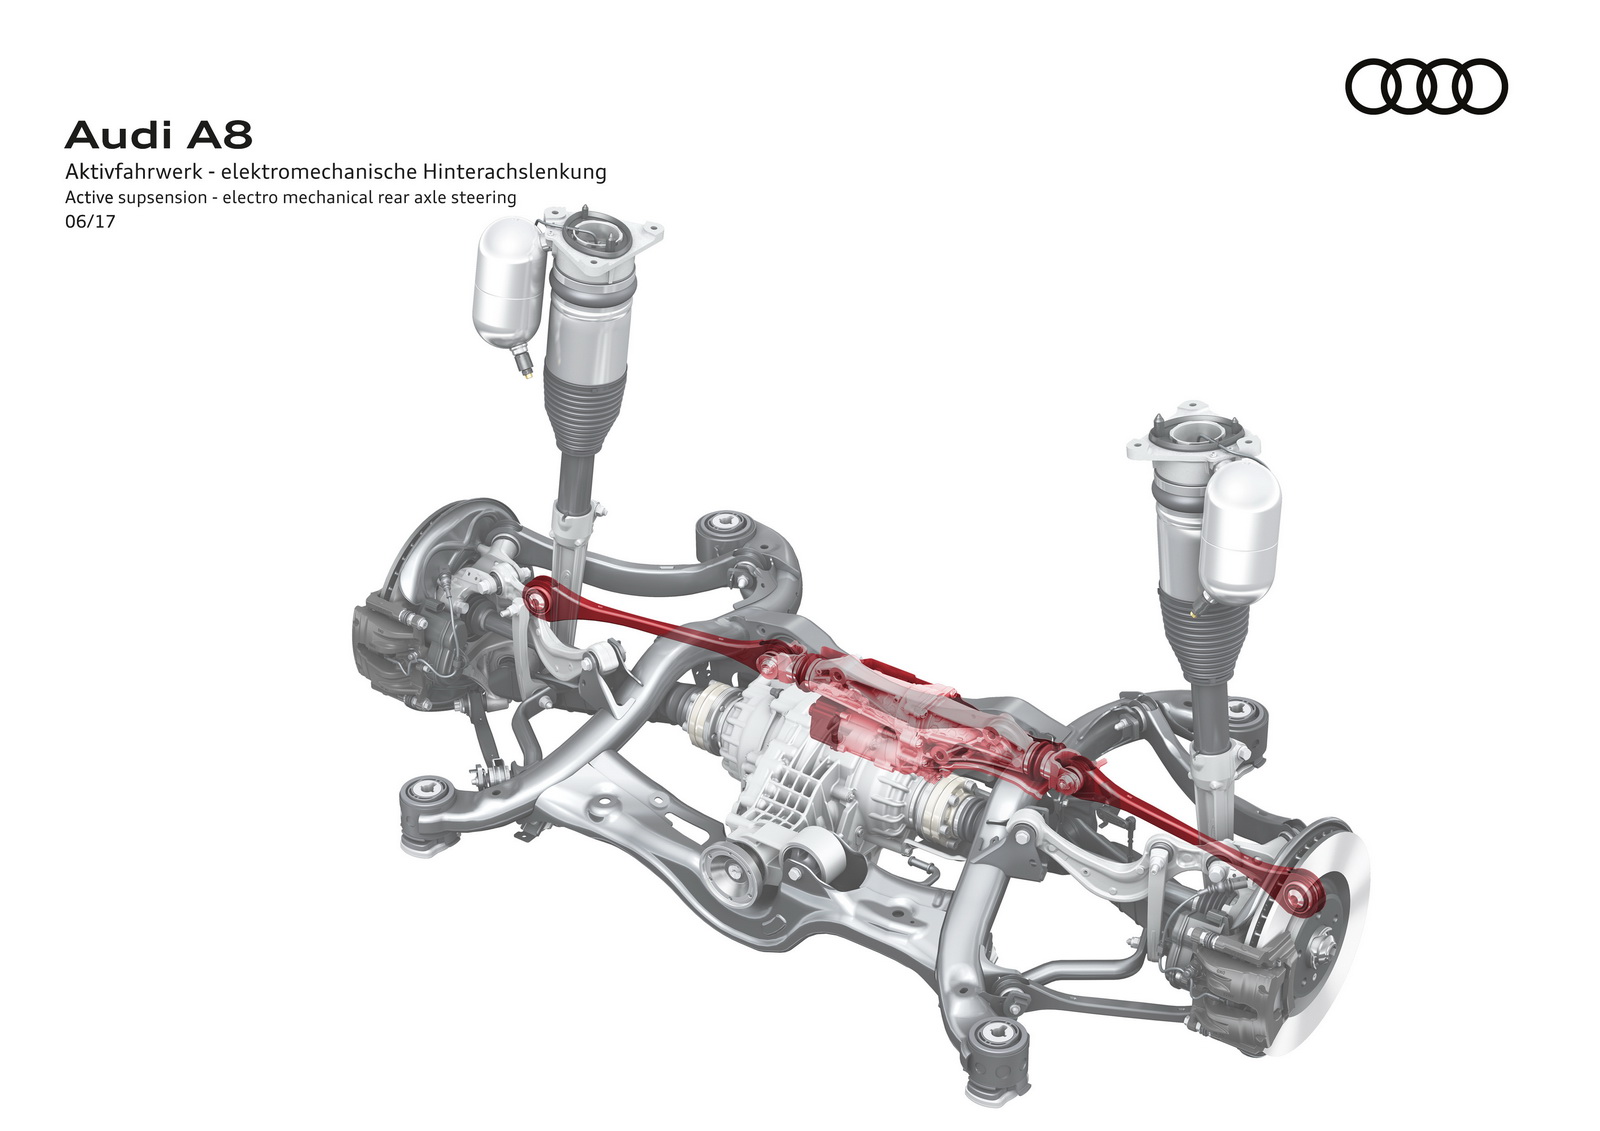 Audi, Active suspension – electro mechanical rear axle steering: Sebuah Active Suspension dan Pilot dikala Macet? Nantikan di Audi A8!